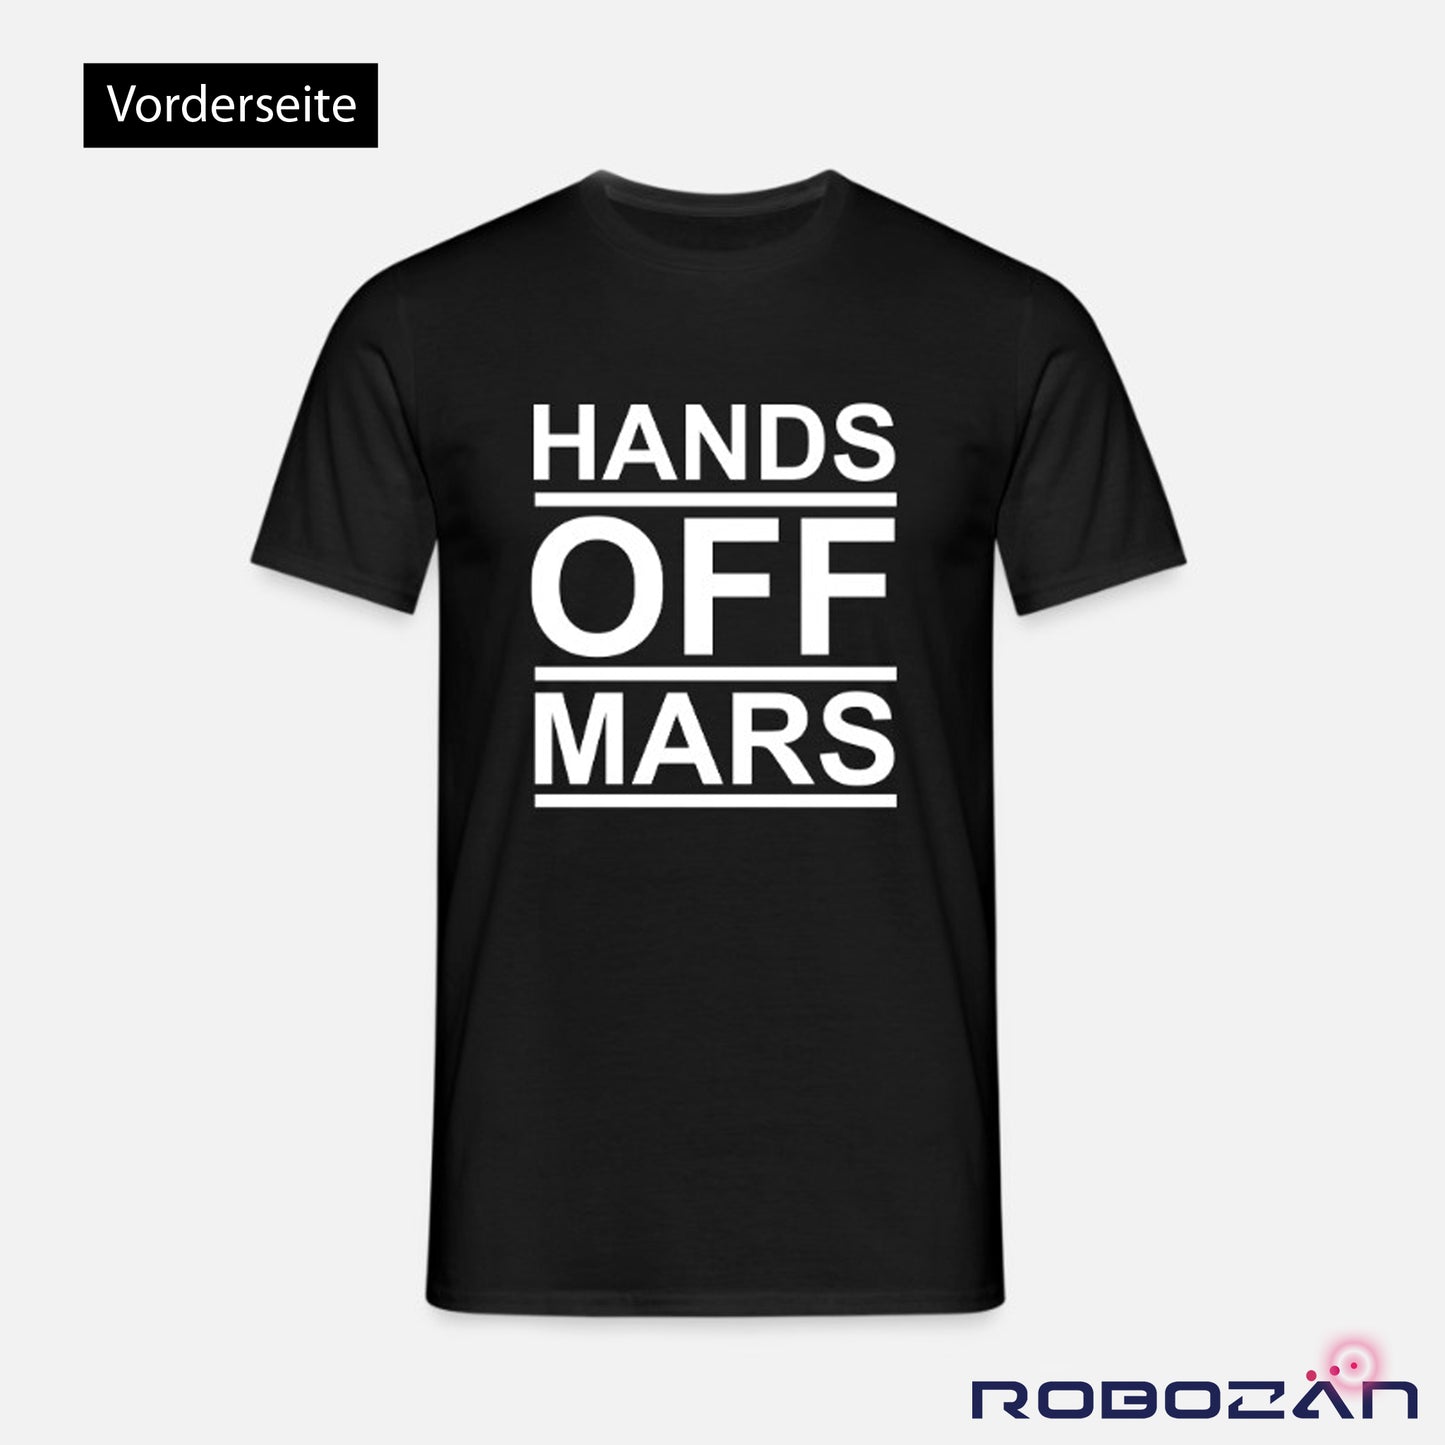 T-Shirt "Hands off Mars" Schwarz/Weiß